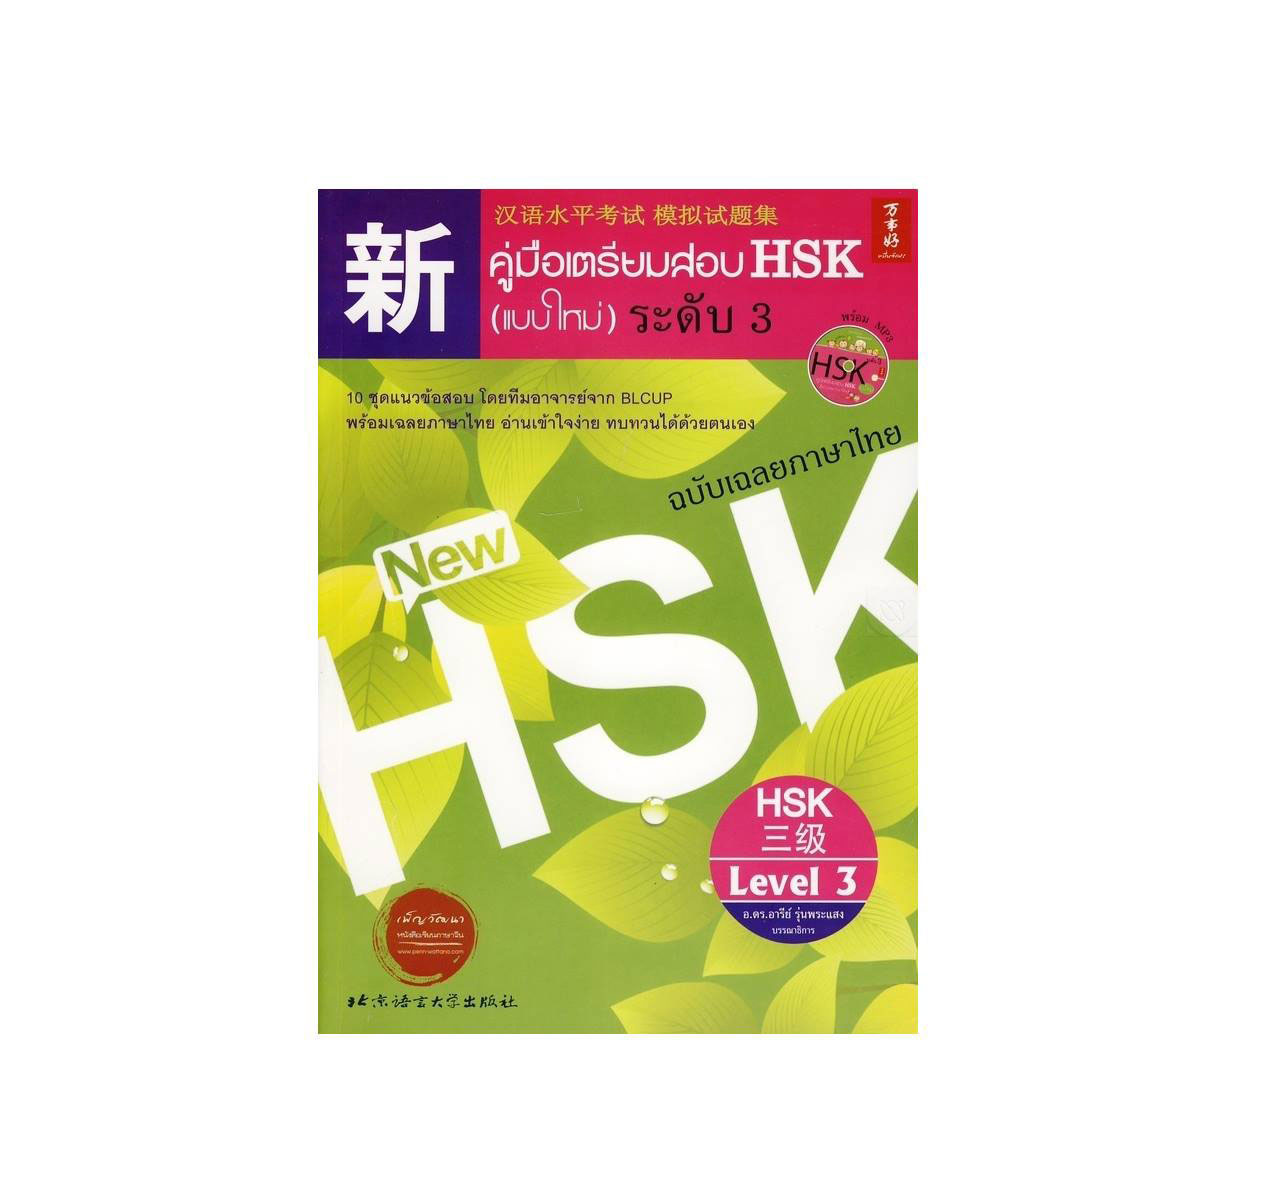 คู่มือเตรียมสอบ HSK ระดับ 3 - ตัวอย่างข้อสอบเสมือนจริงพร้อมเฉลย+คำอธิบายภาษาไทยอย่างละเอียด